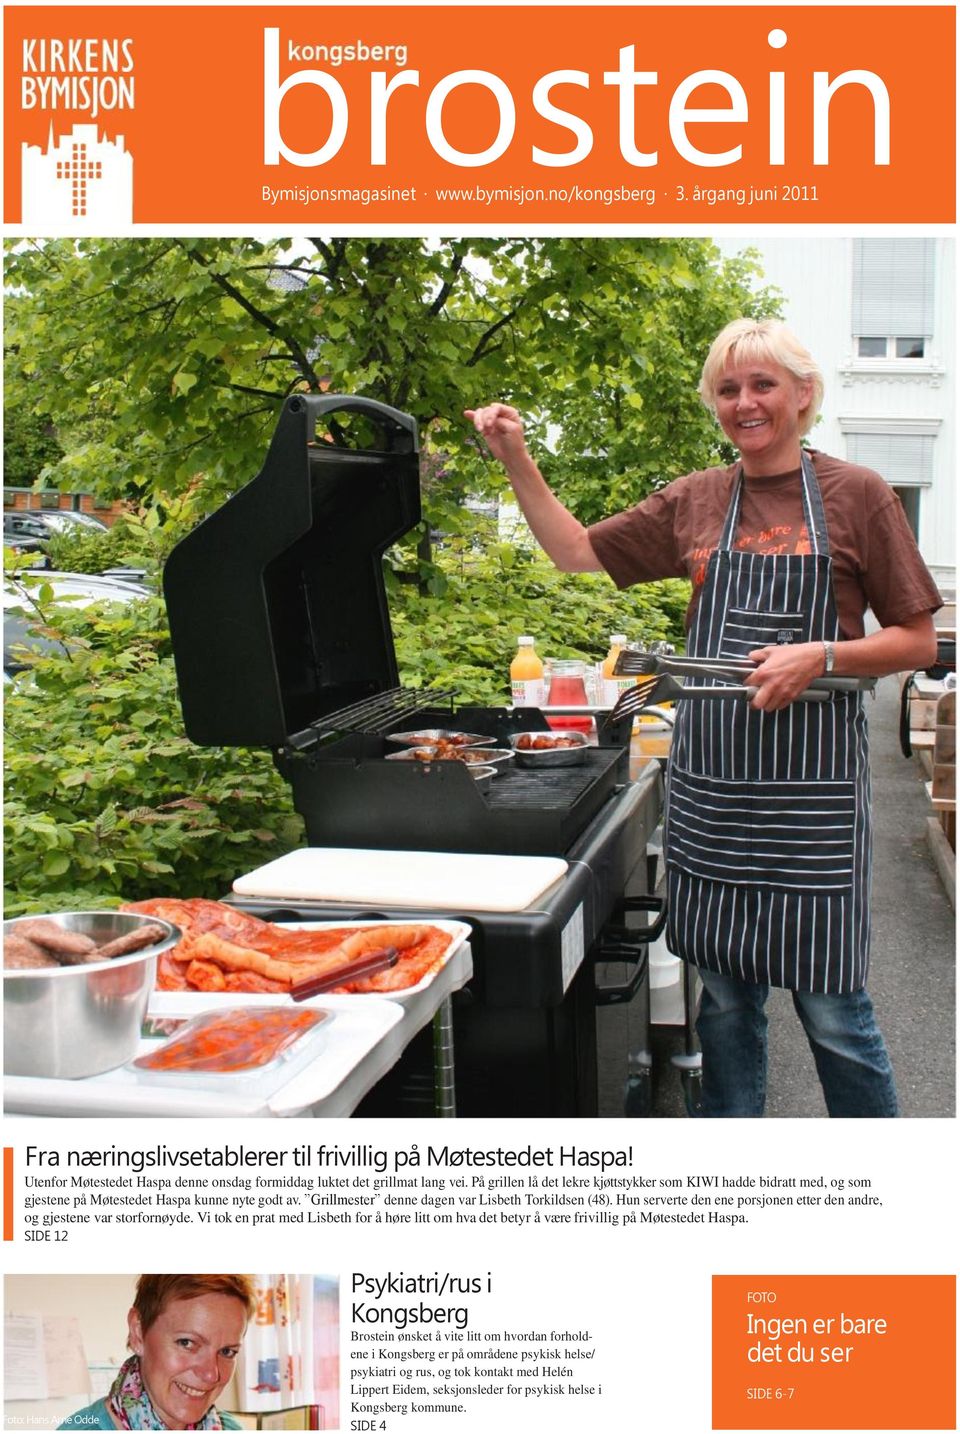 Grillmester denne dagen var Lisbeth Torkildsen (48). Hun serverte den ene porsjonen etter den andre, og gjestene var storfornøyde.